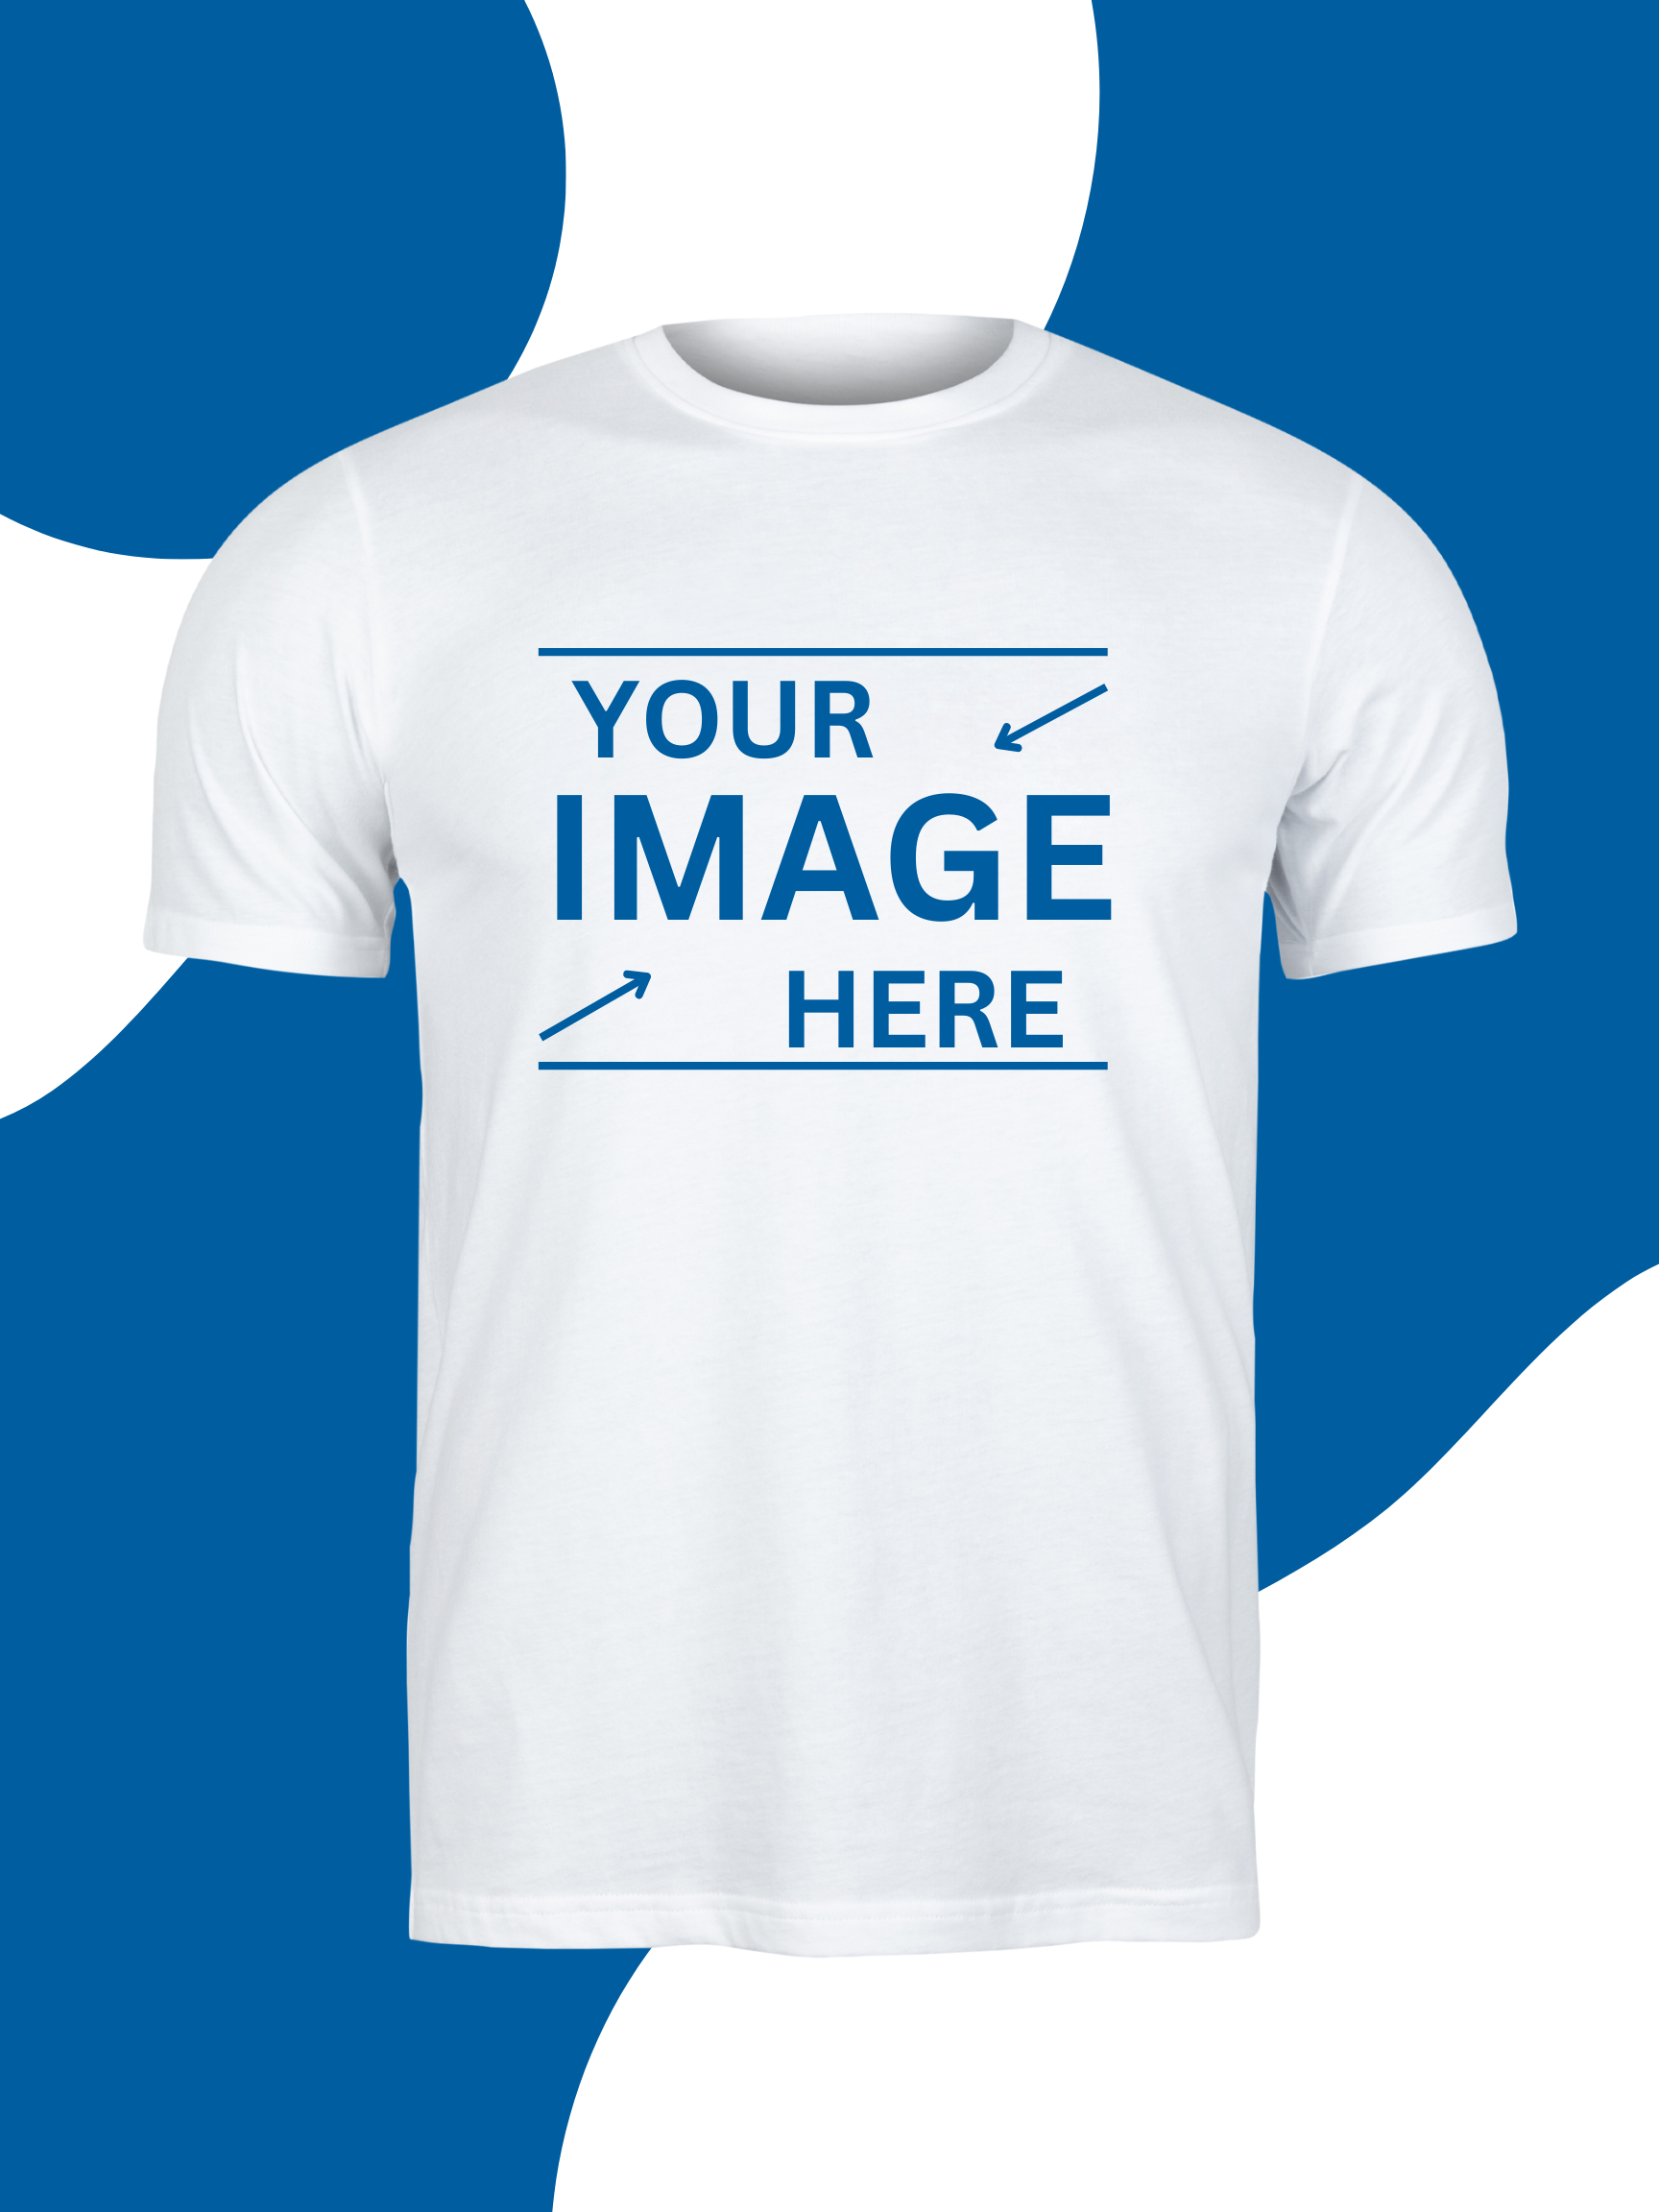 T Shirt Maker Online, Make Your Own Shirt